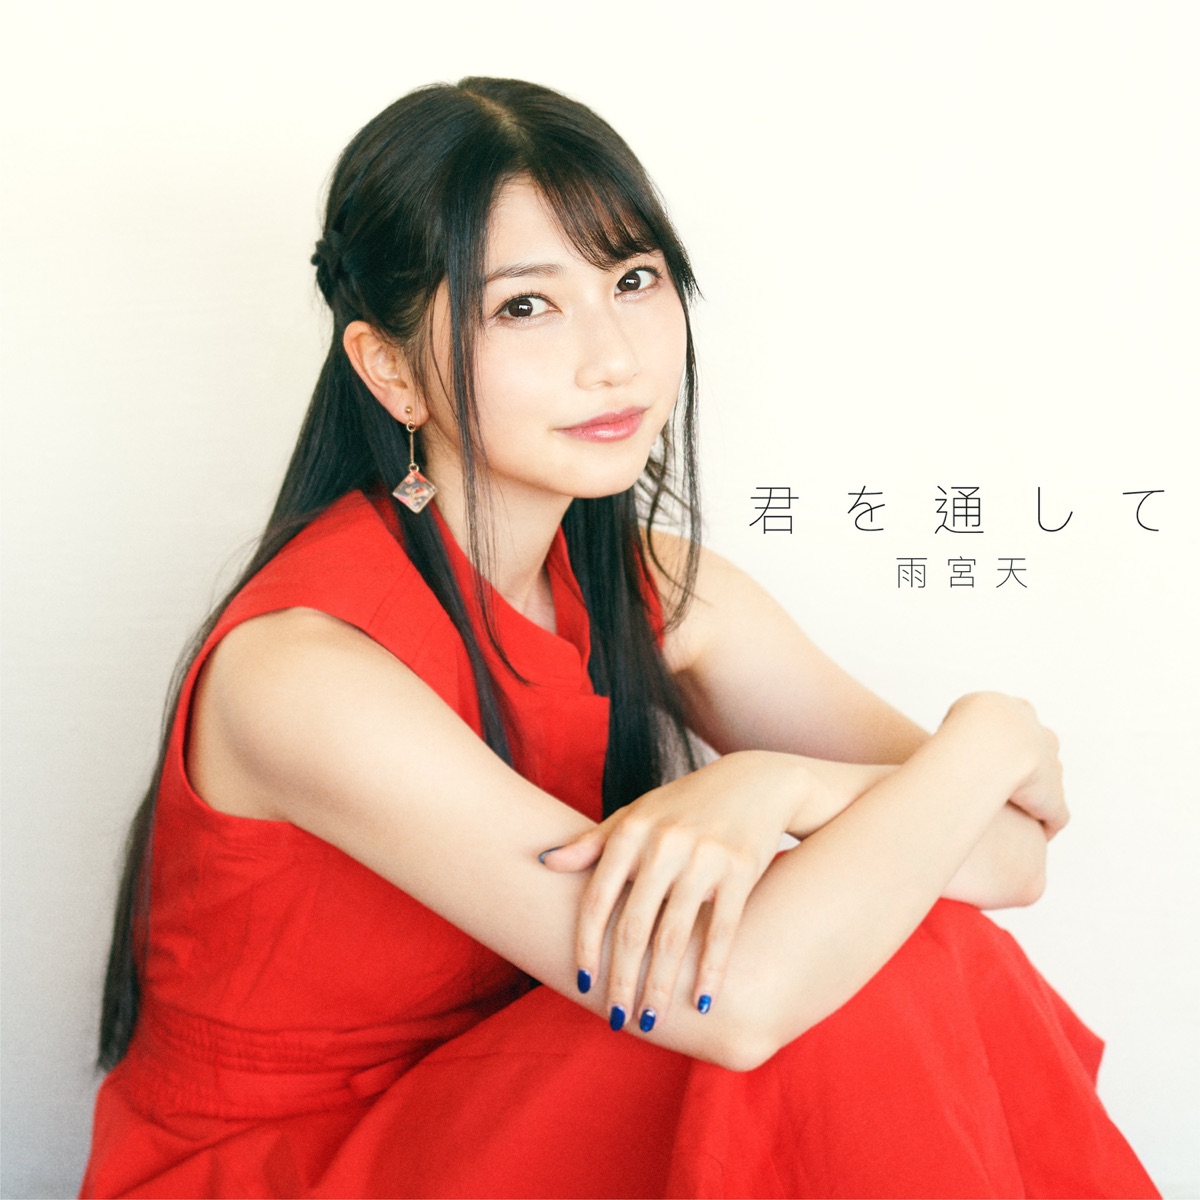 Cover for『Sora Amamiya - Kimi wo Tooshite』from the release『Kimi wo Toushite』